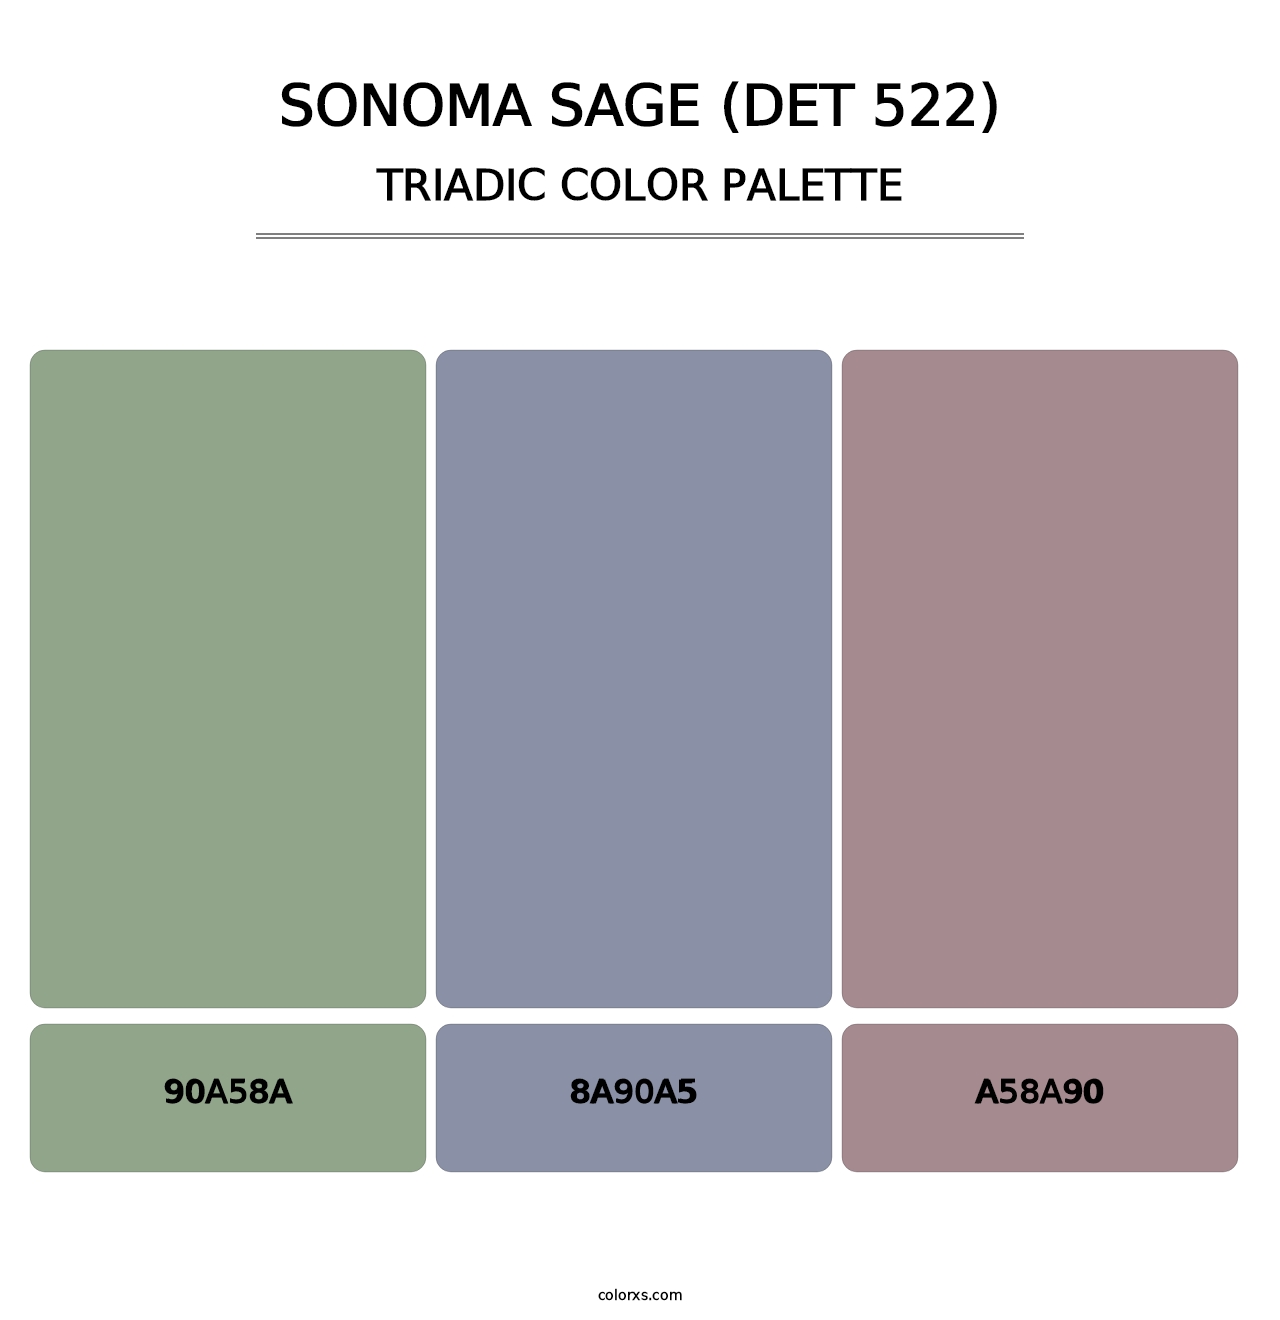 Sonoma Sage (DET 522) - Triadic Color Palette